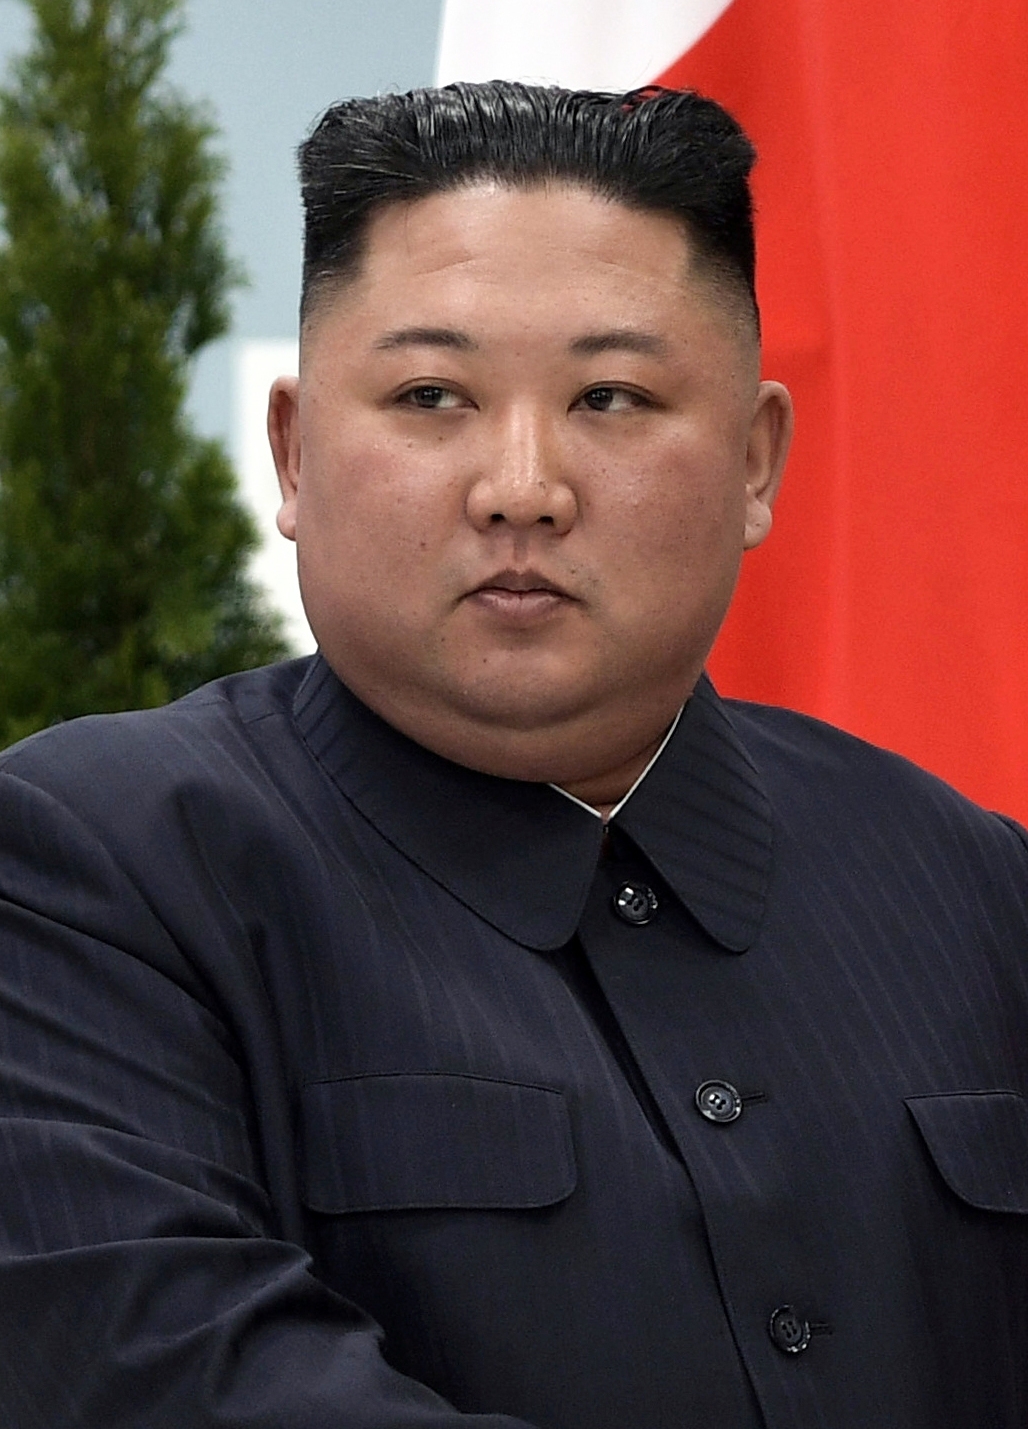 auteur Kim Jong-un de la citation Comparé à il y a 10 ans, la principale motivation pour la défection est passée de la nourriture à la liberté.